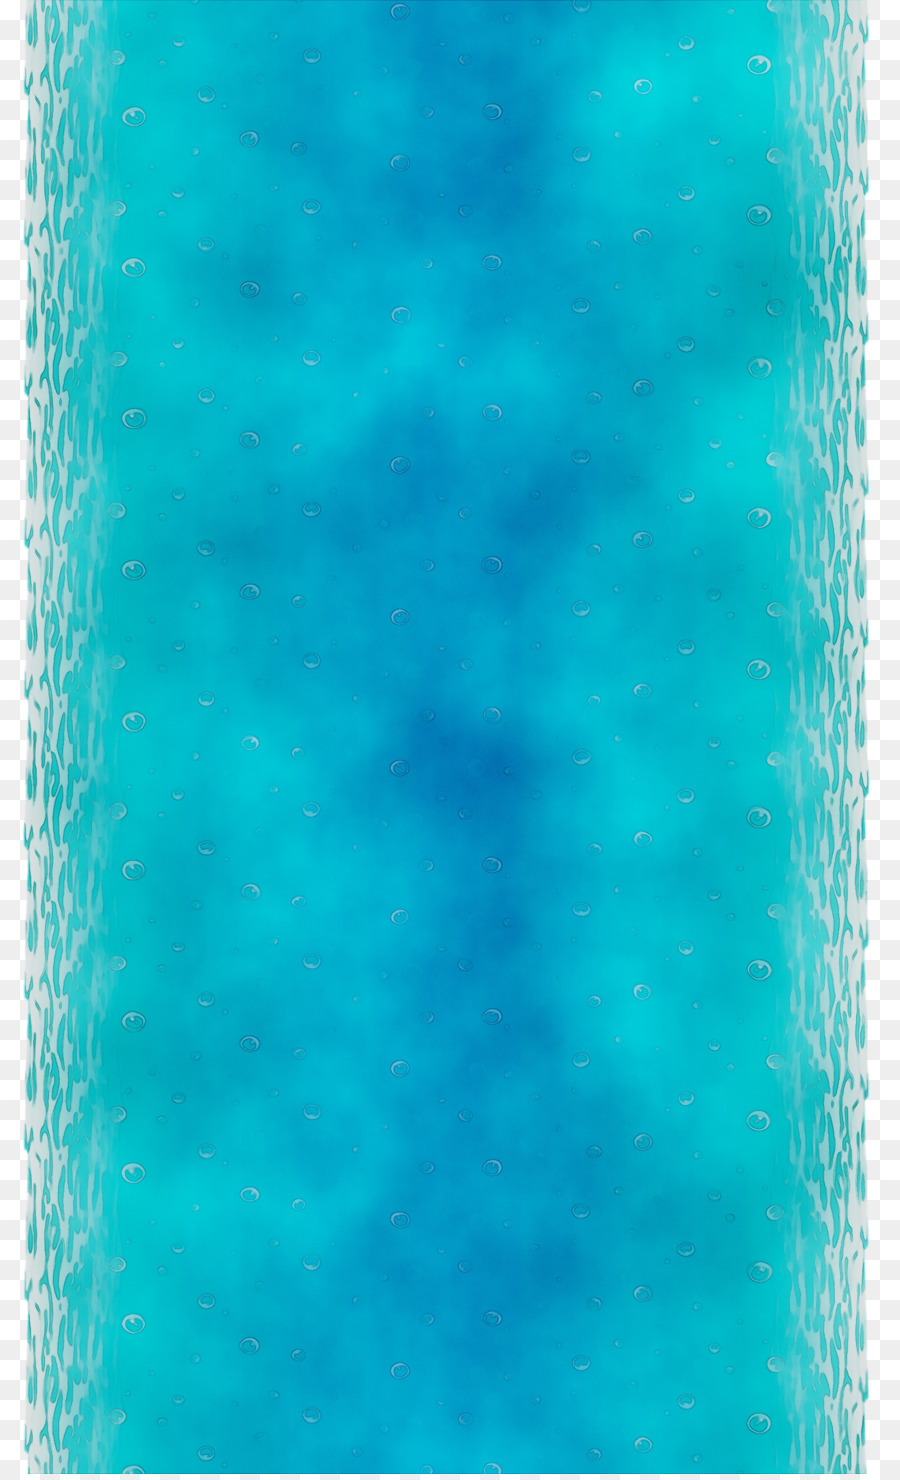 Turquoise，Aqua PNG